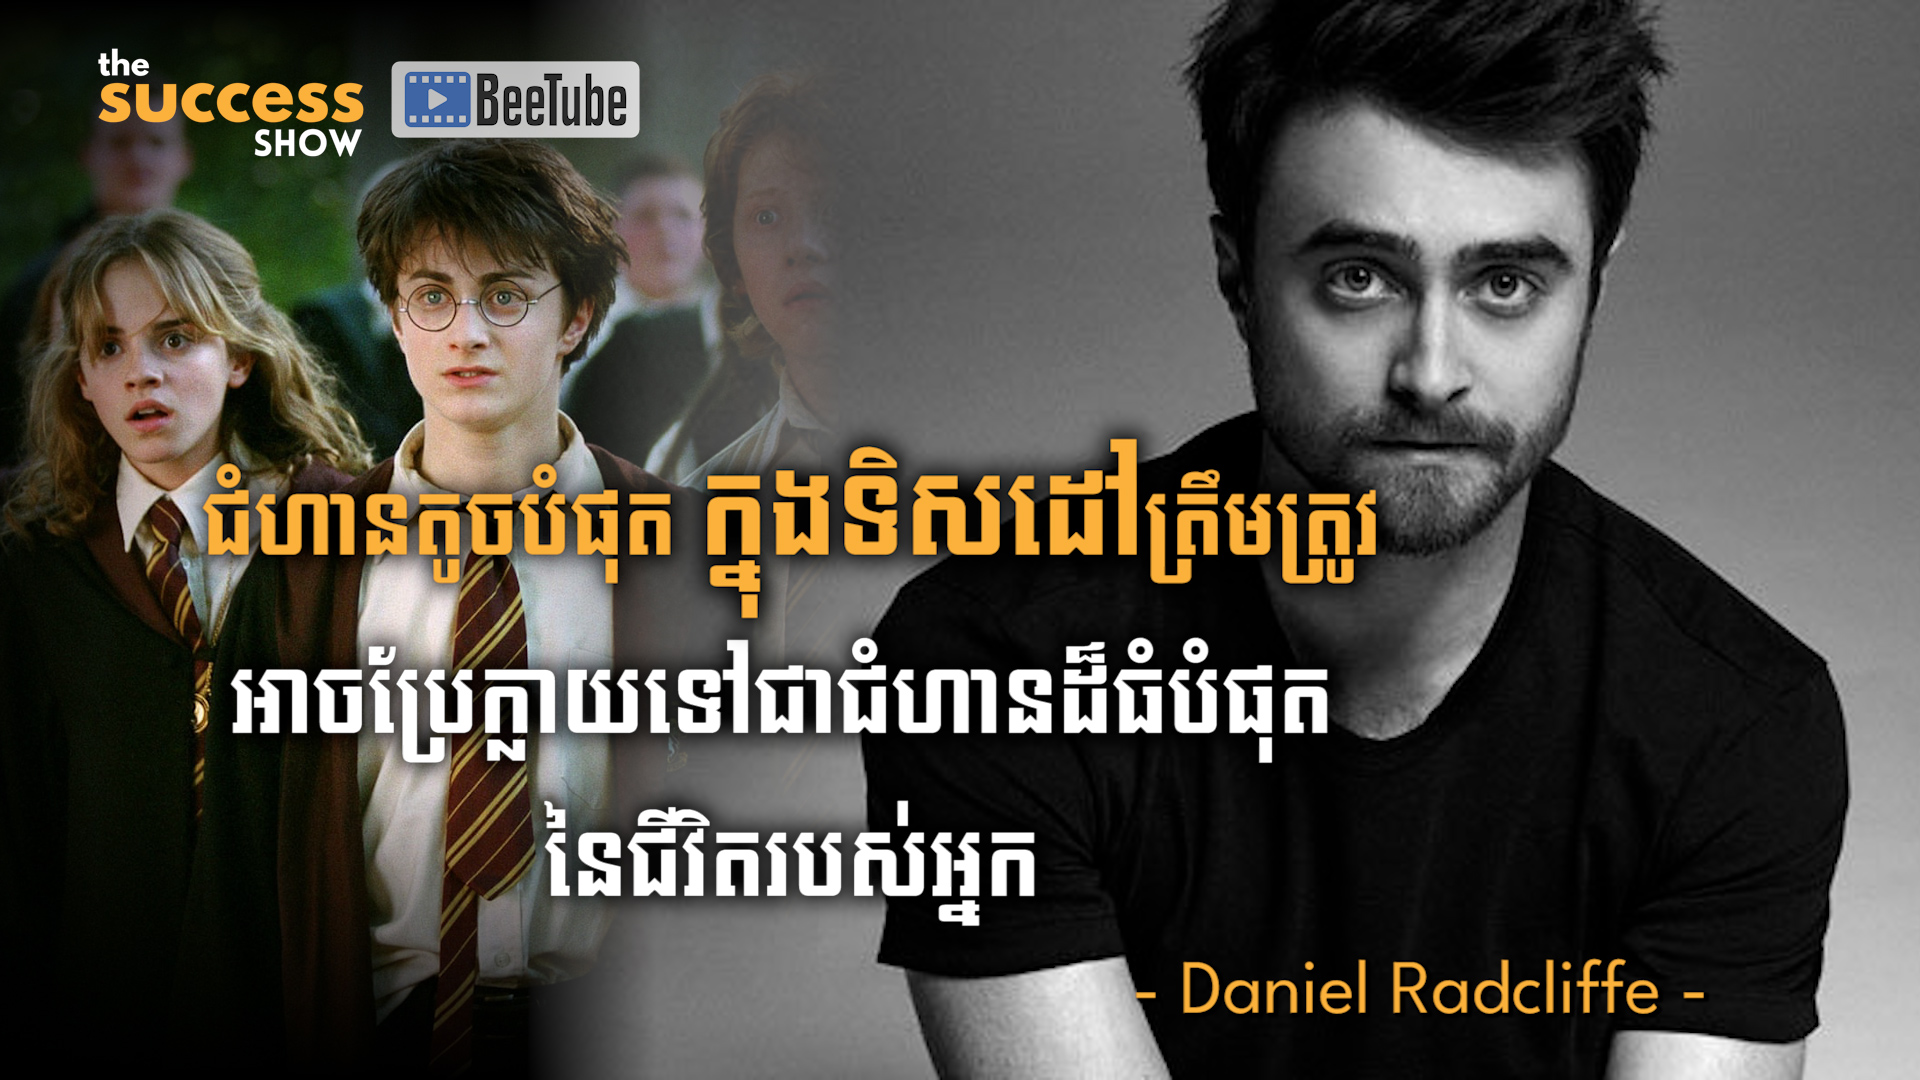 ជំហានតូចបំផុតក្នុងទិសដៅត្រឹមត្រូវ អាចប្រែក្លាយទៅជាជំហានដ៏ធំបំផុតនៃជីវិតរបស់អ្នក​​ - Daniel Radcliffe